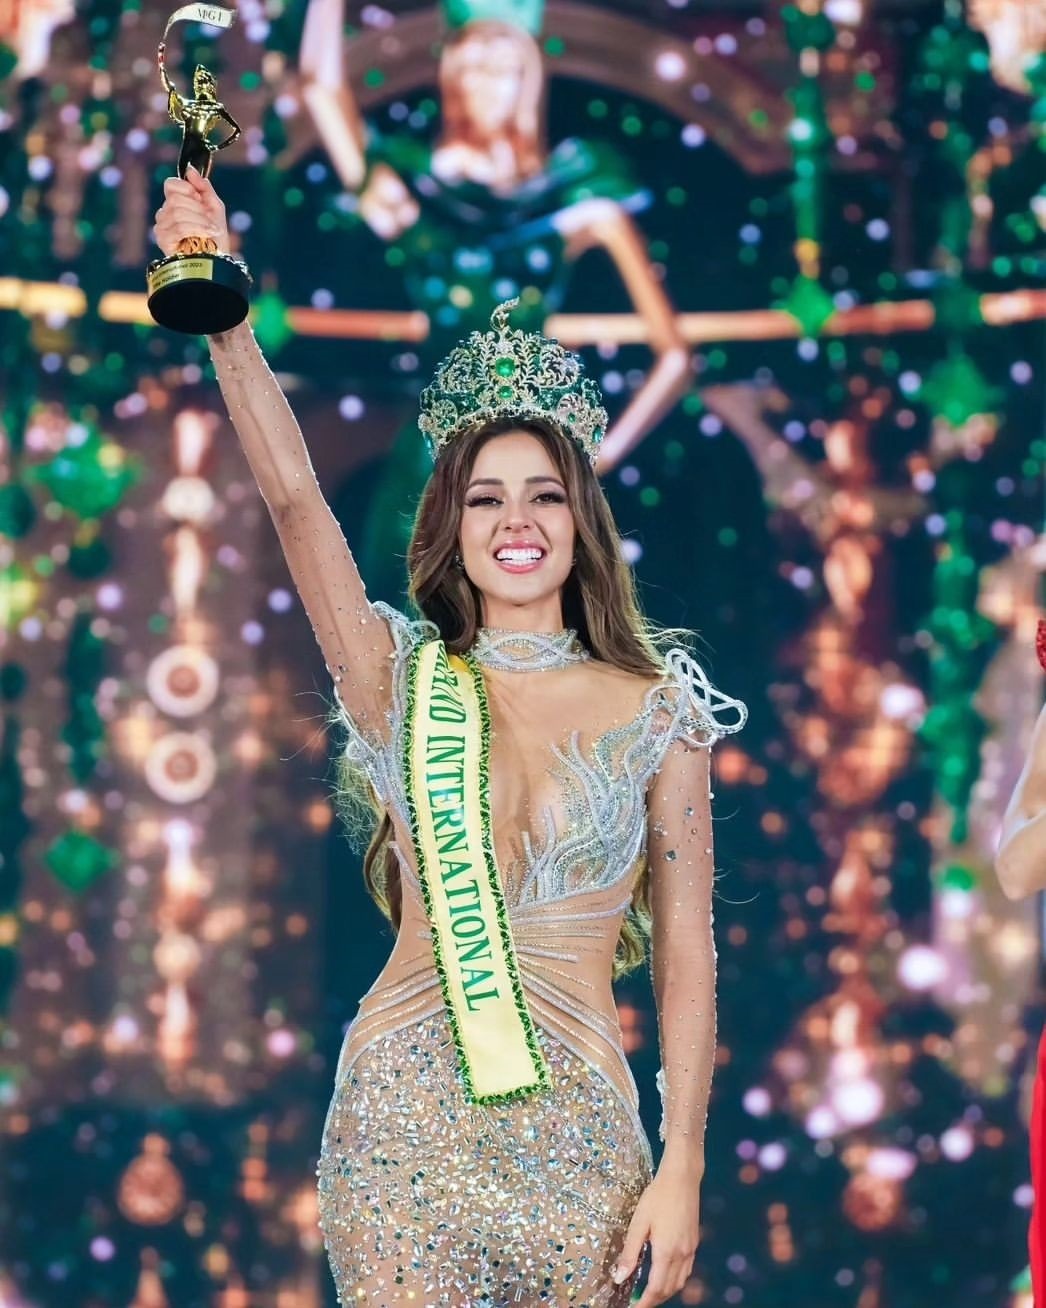 La actual Miss Grand International, Luciana Fuster se mudará a vivir a Tailandia a fines de marzo/Foto: Instagram 